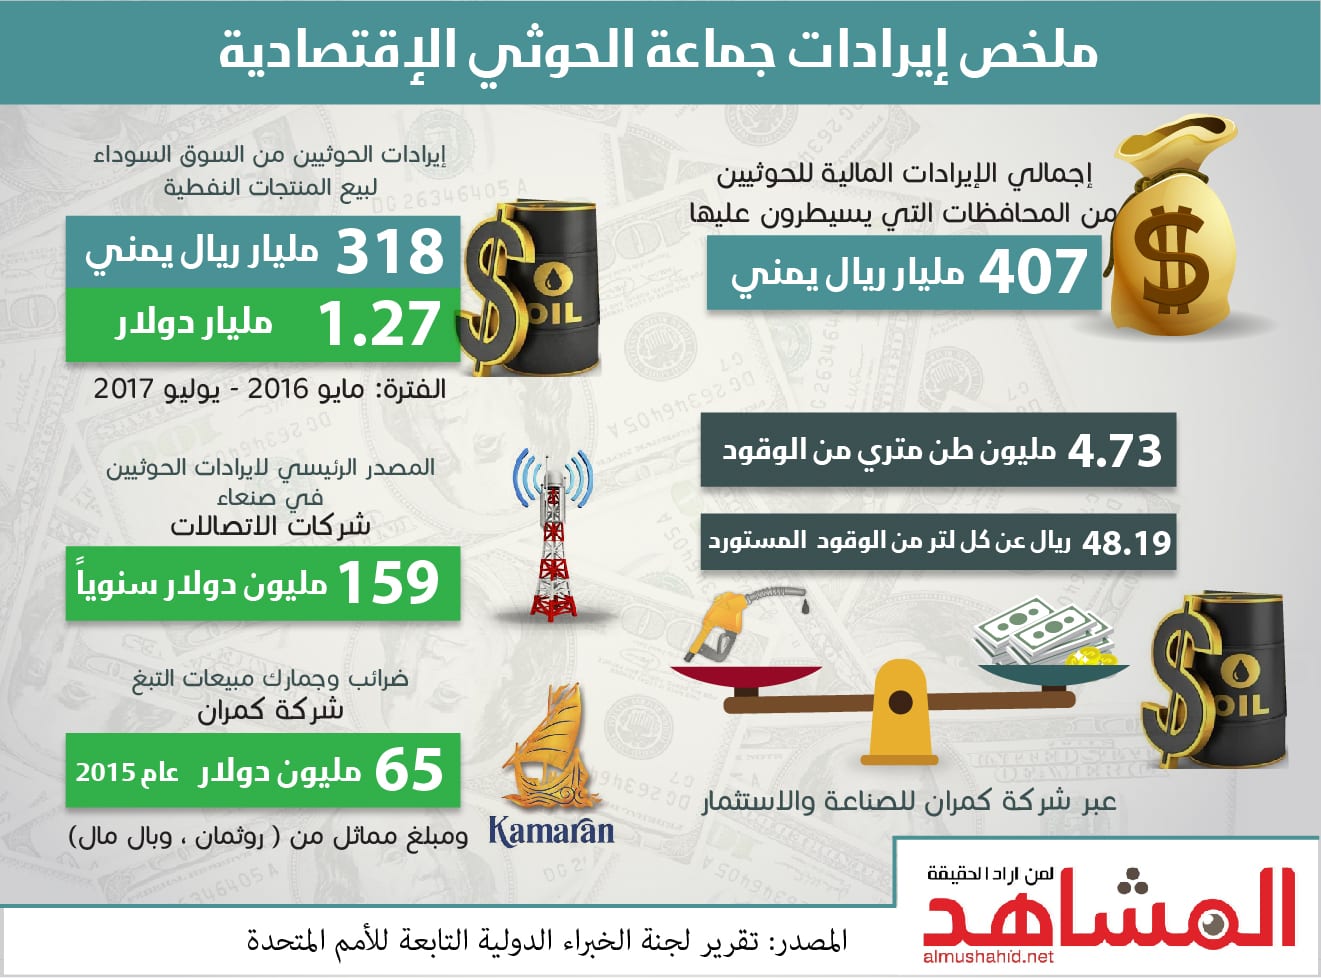 تقرير فريق الخبراء يكشف عن خفايا اقتصادية لجماعة الحوثي